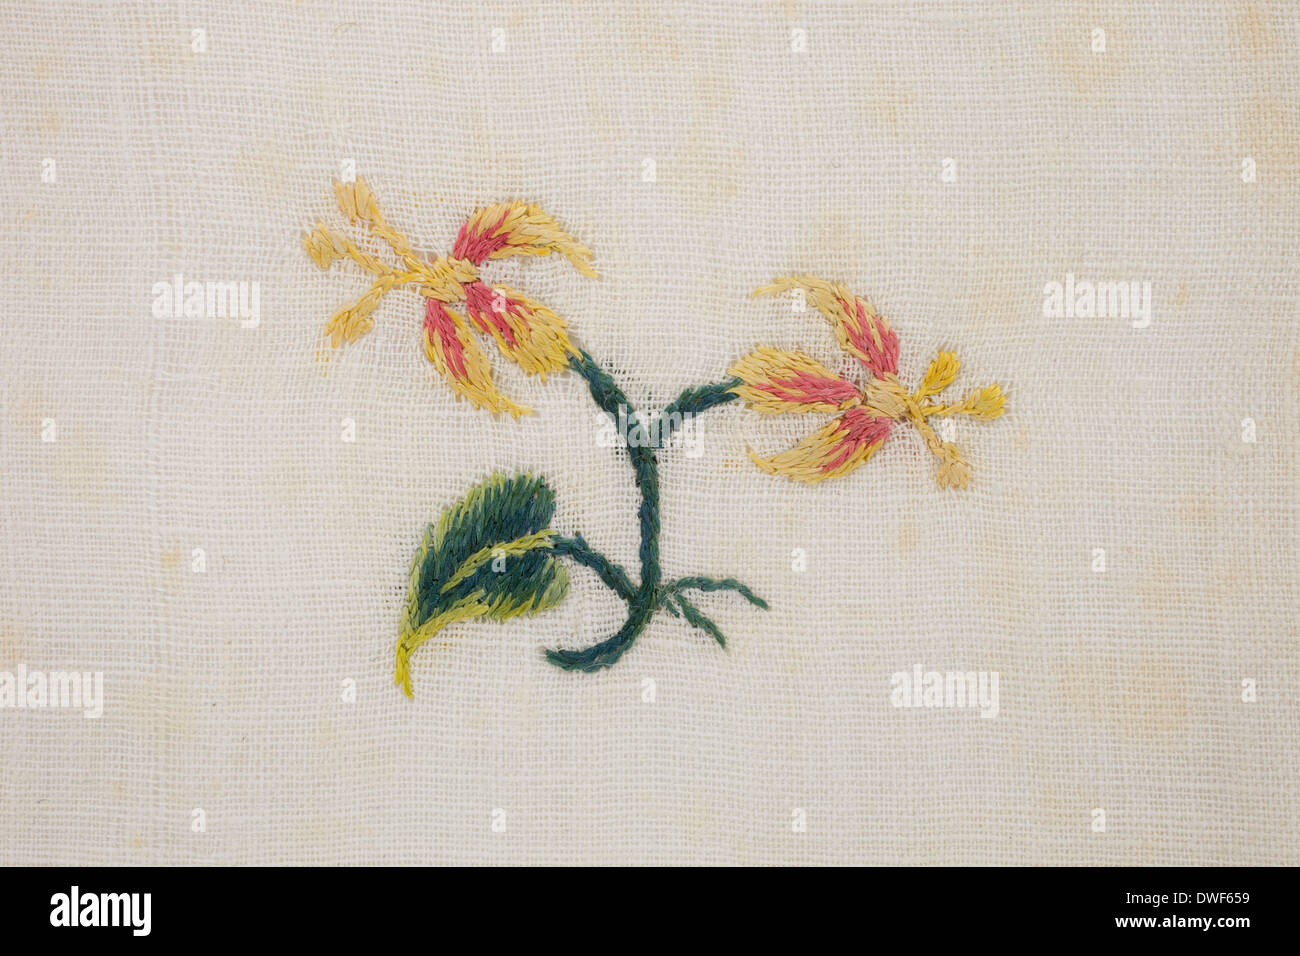 Pelouse en coton, brodé à la main, jaune et rouge avec des fleurs sauvages et des motifs floraux, branche date entre 1750 et 1790 Banque D'Images